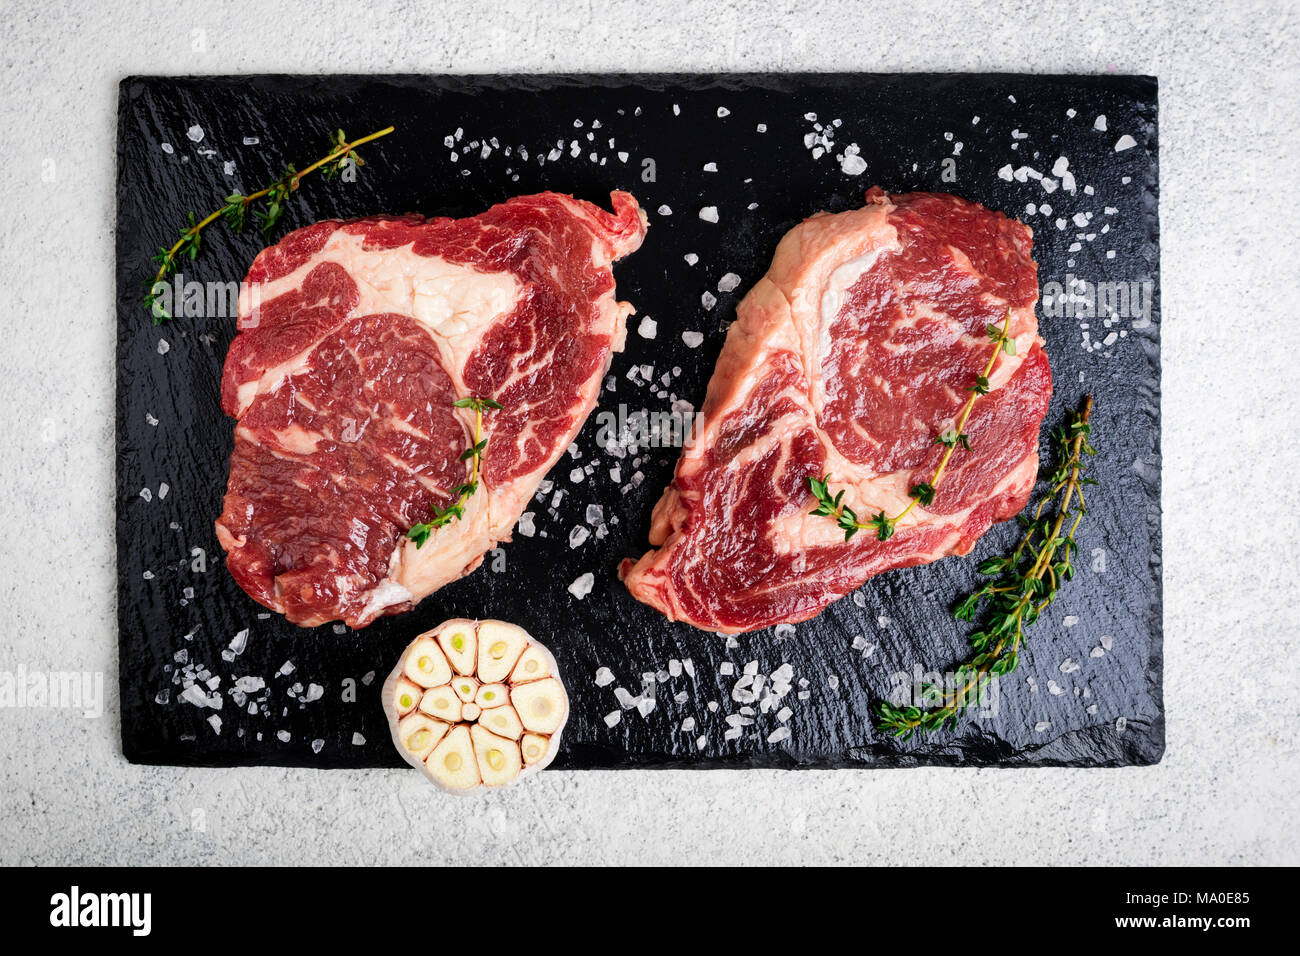 La viande crue. Steak de boeuf sur une planche à découper, de romarin et d'épices, vue d'en haut. La cuisson des viandes Banque D'Images